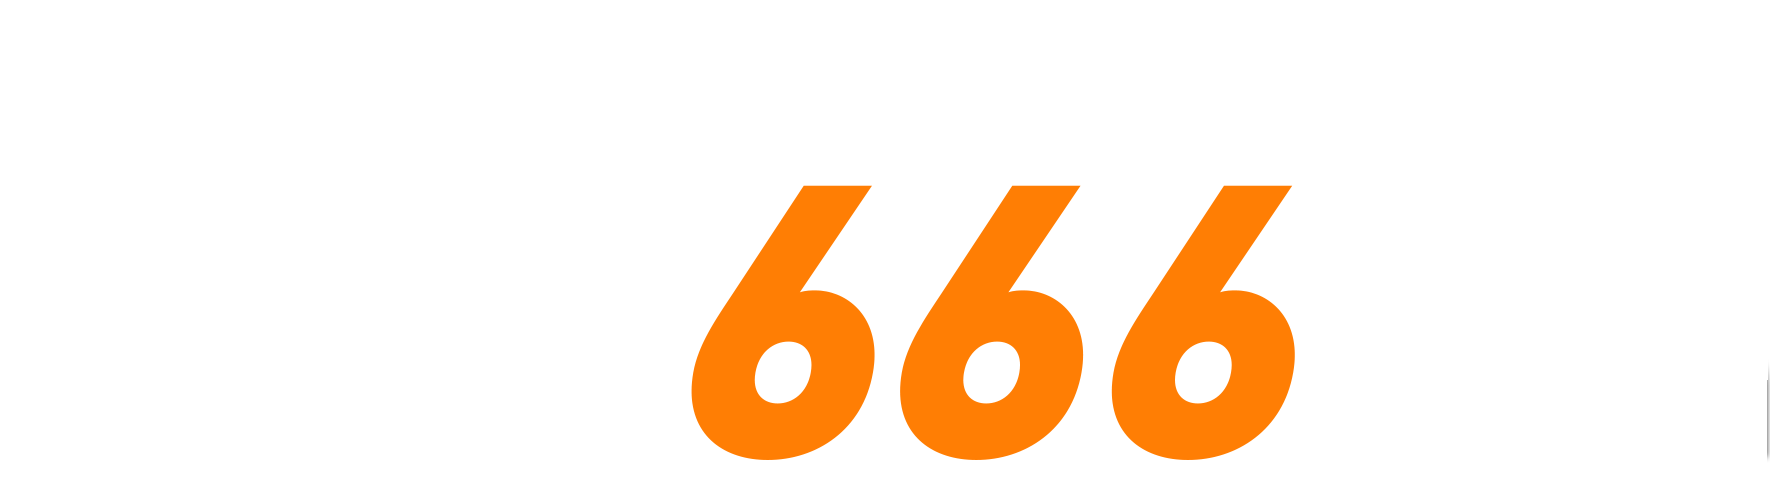 S666 logo 01